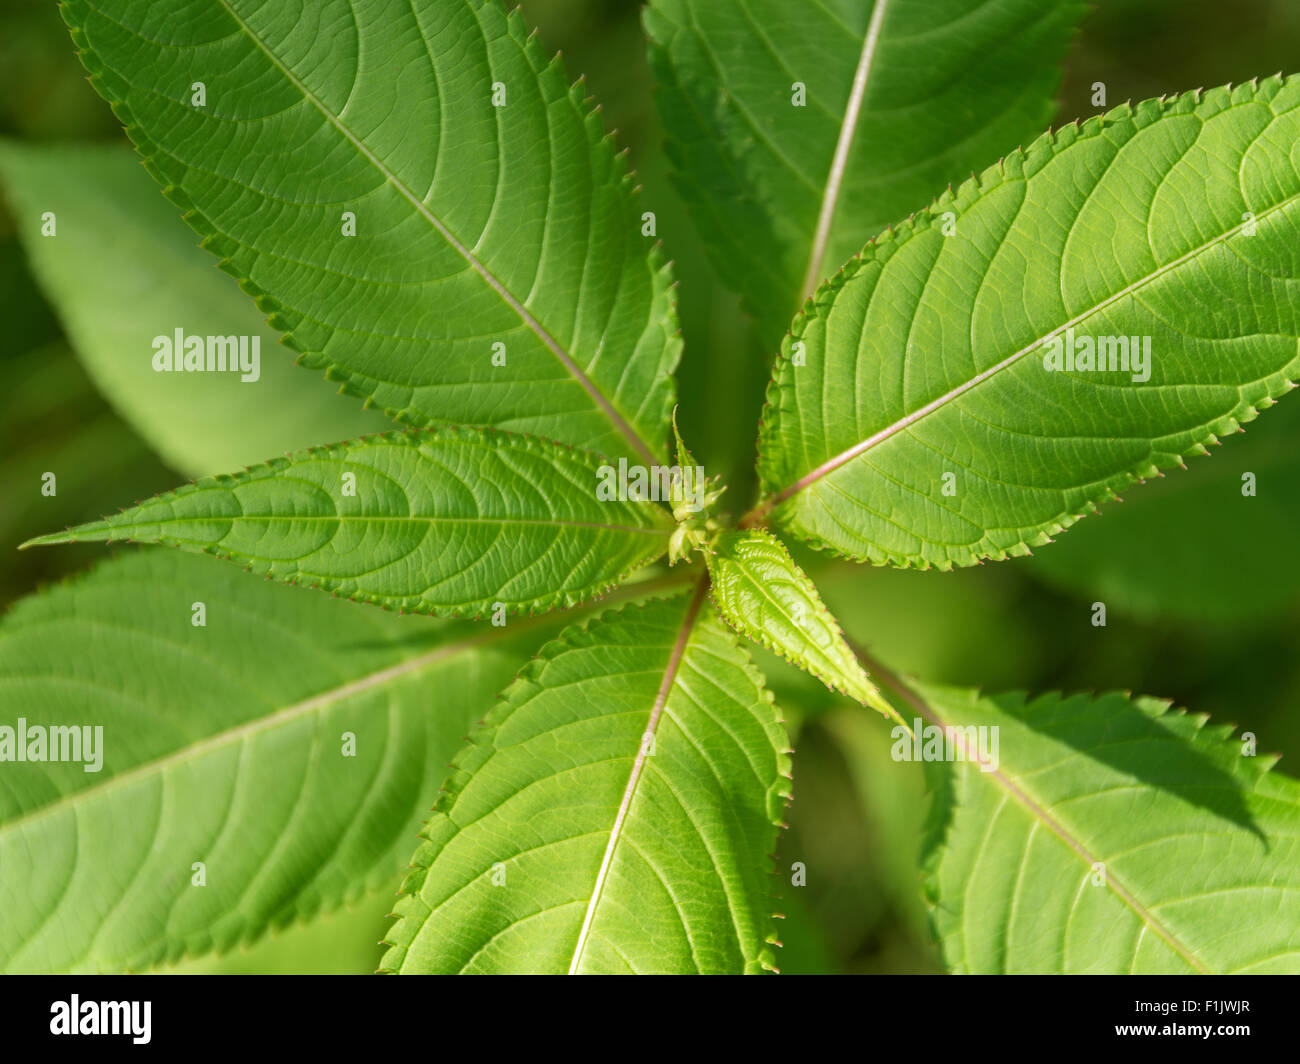 Dettaglio shot che mostra le foglie del bobby tops fiore visto da sopra Foto Stock